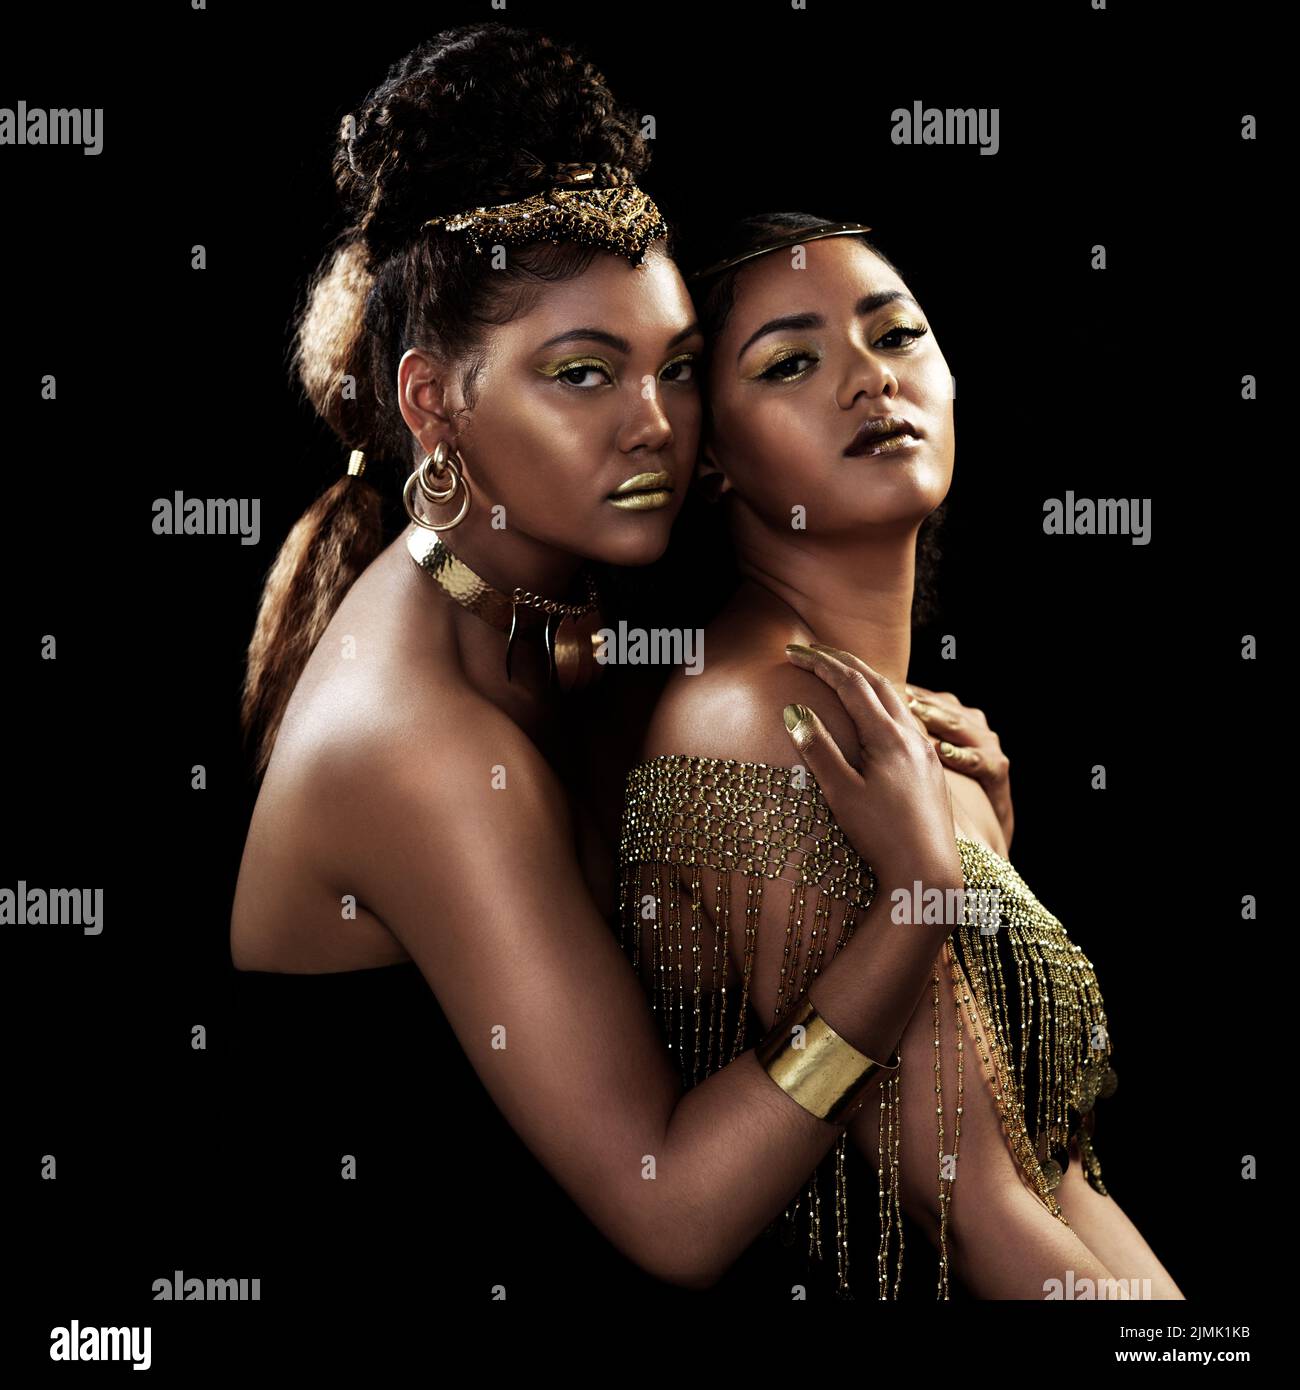 Bienvenido a nuestro Queendom. Retrato de dos mujeres jóvenes atractivas y elegantemente vestidas posando juntas sobre un fondo oscuro. Foto de stock